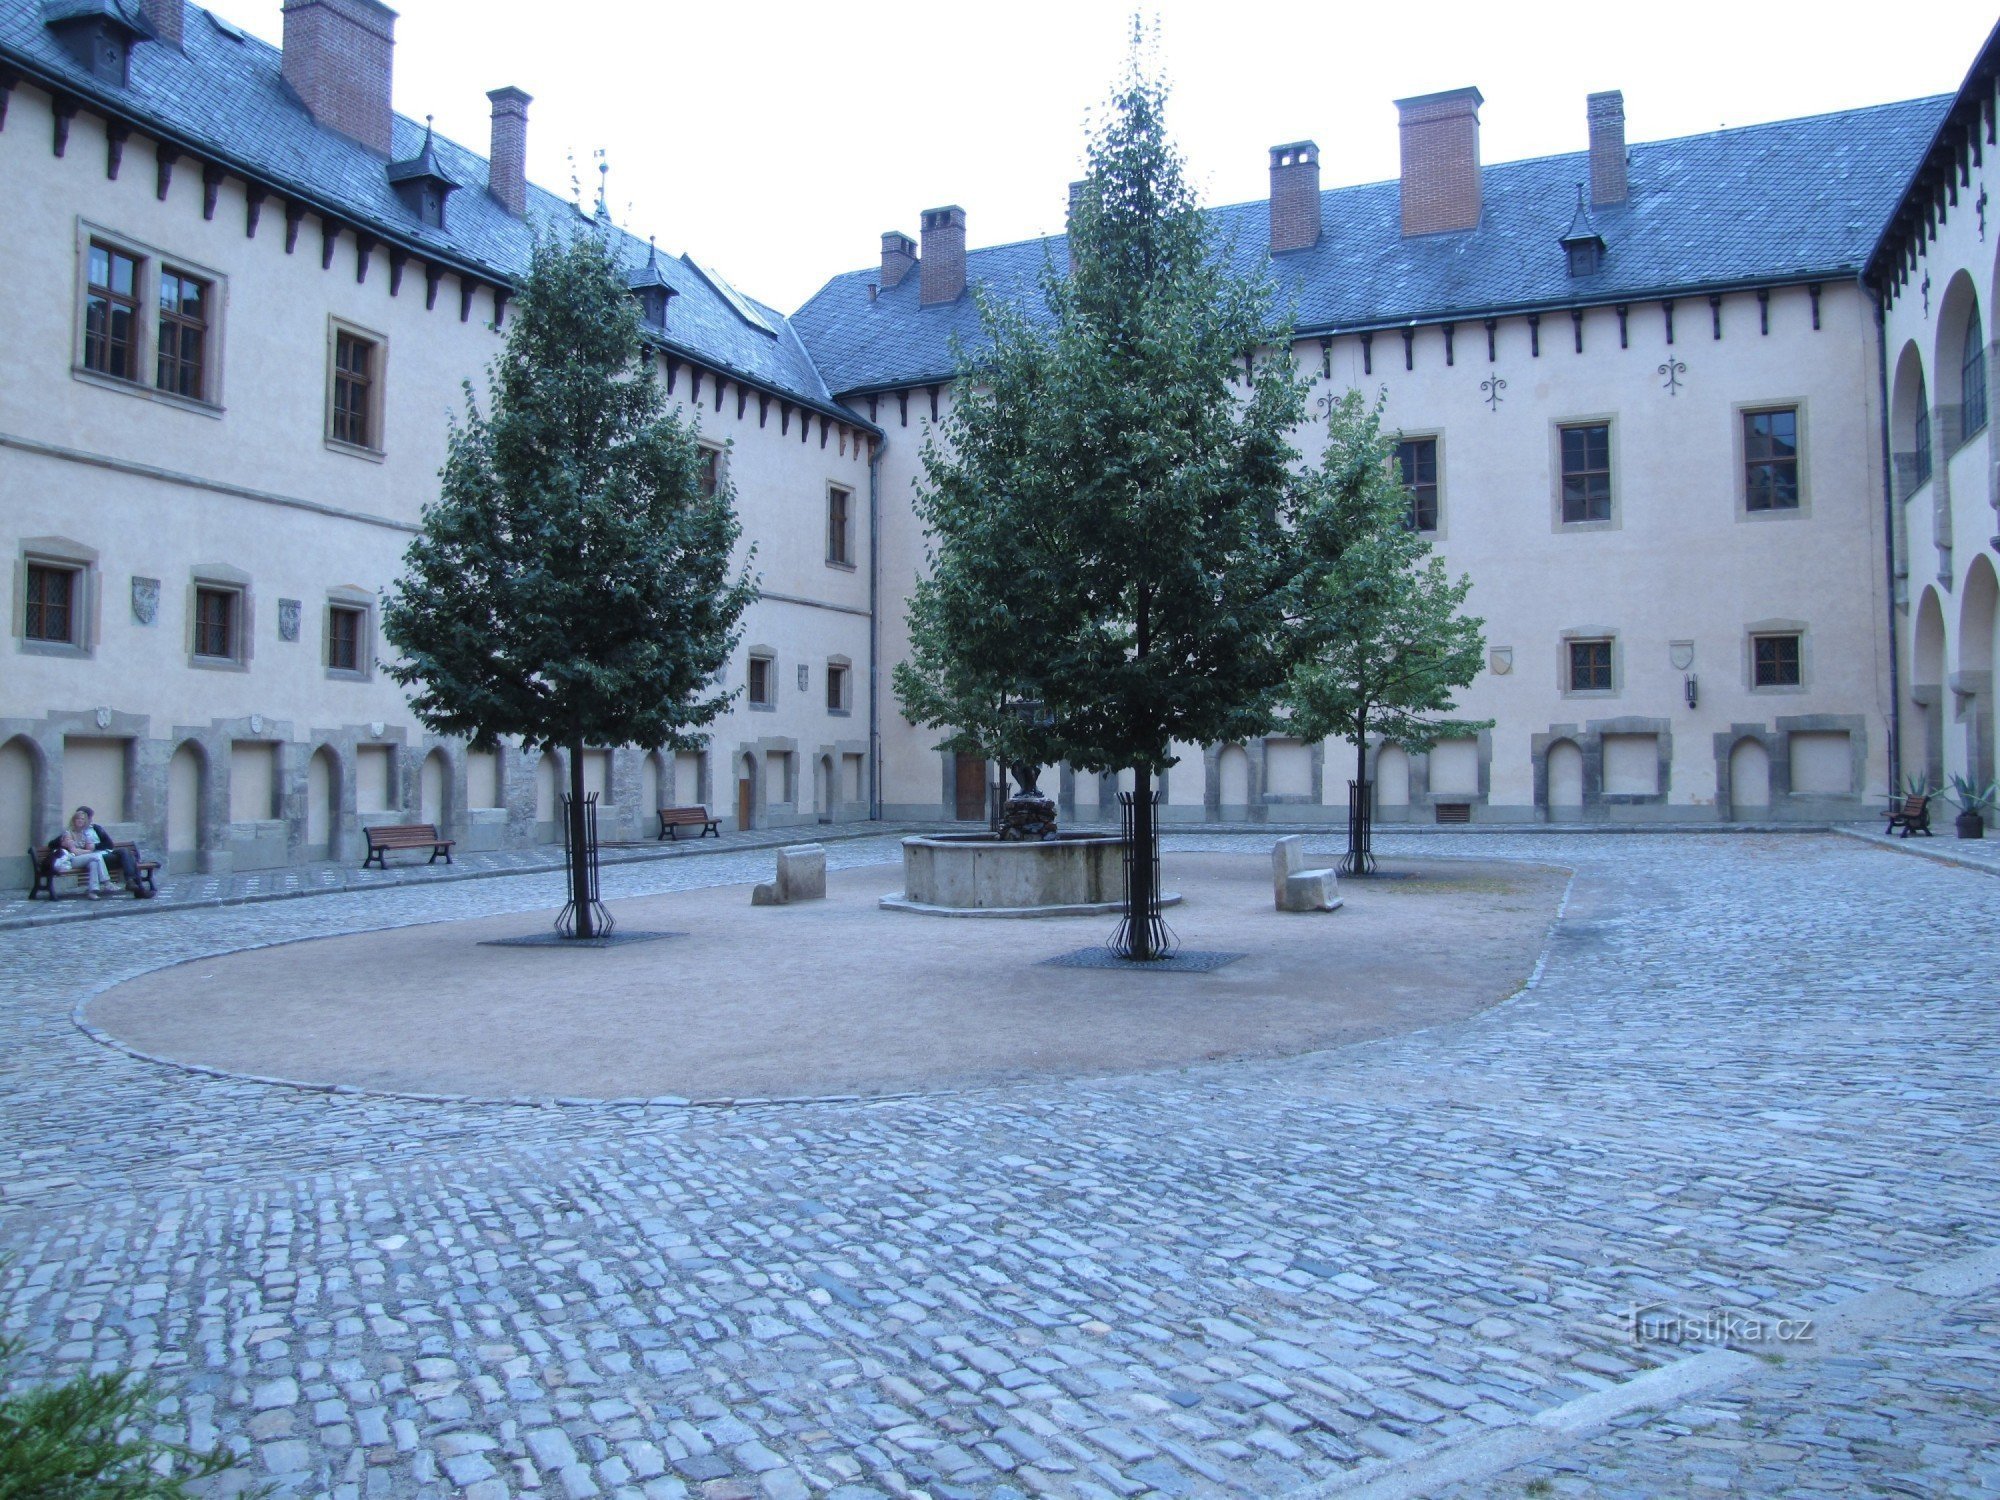 Château de Vlasský dvůr